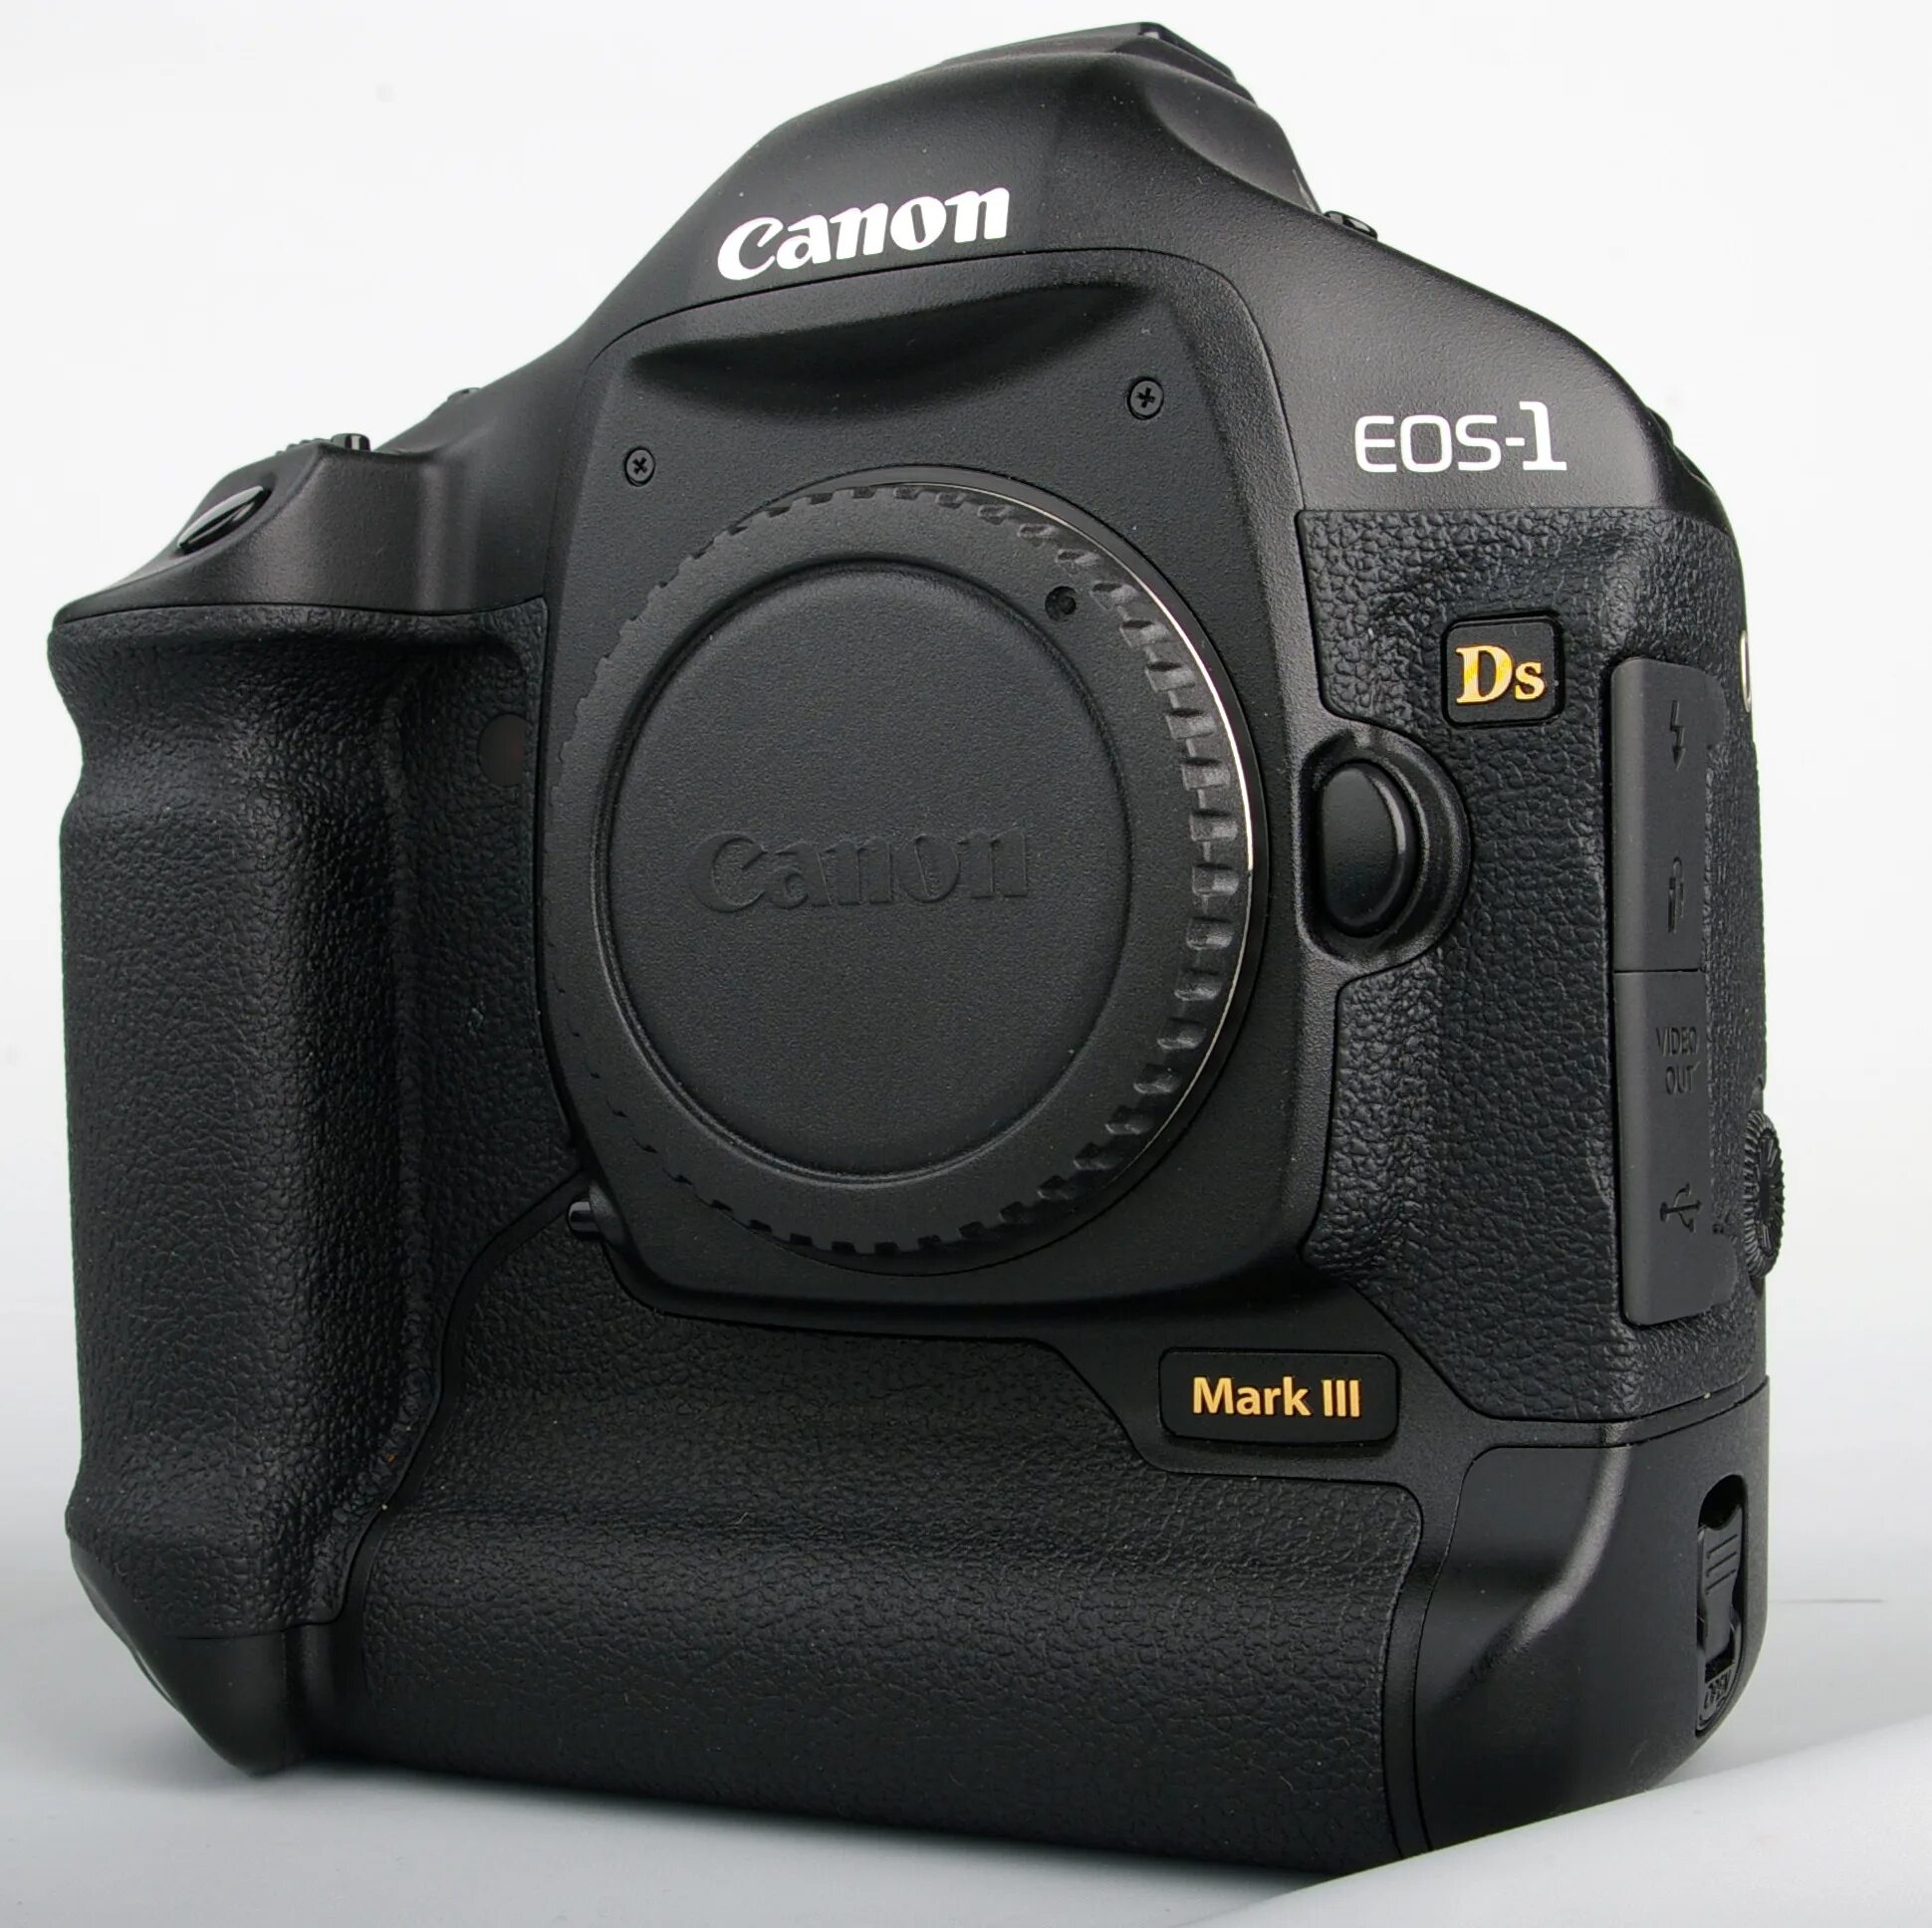 Canon EOS-1ds Mark III. Canon 1ds Mark 3. Canon 1ds m3. Canon EOS 1ds Mark lll. 1ds mark